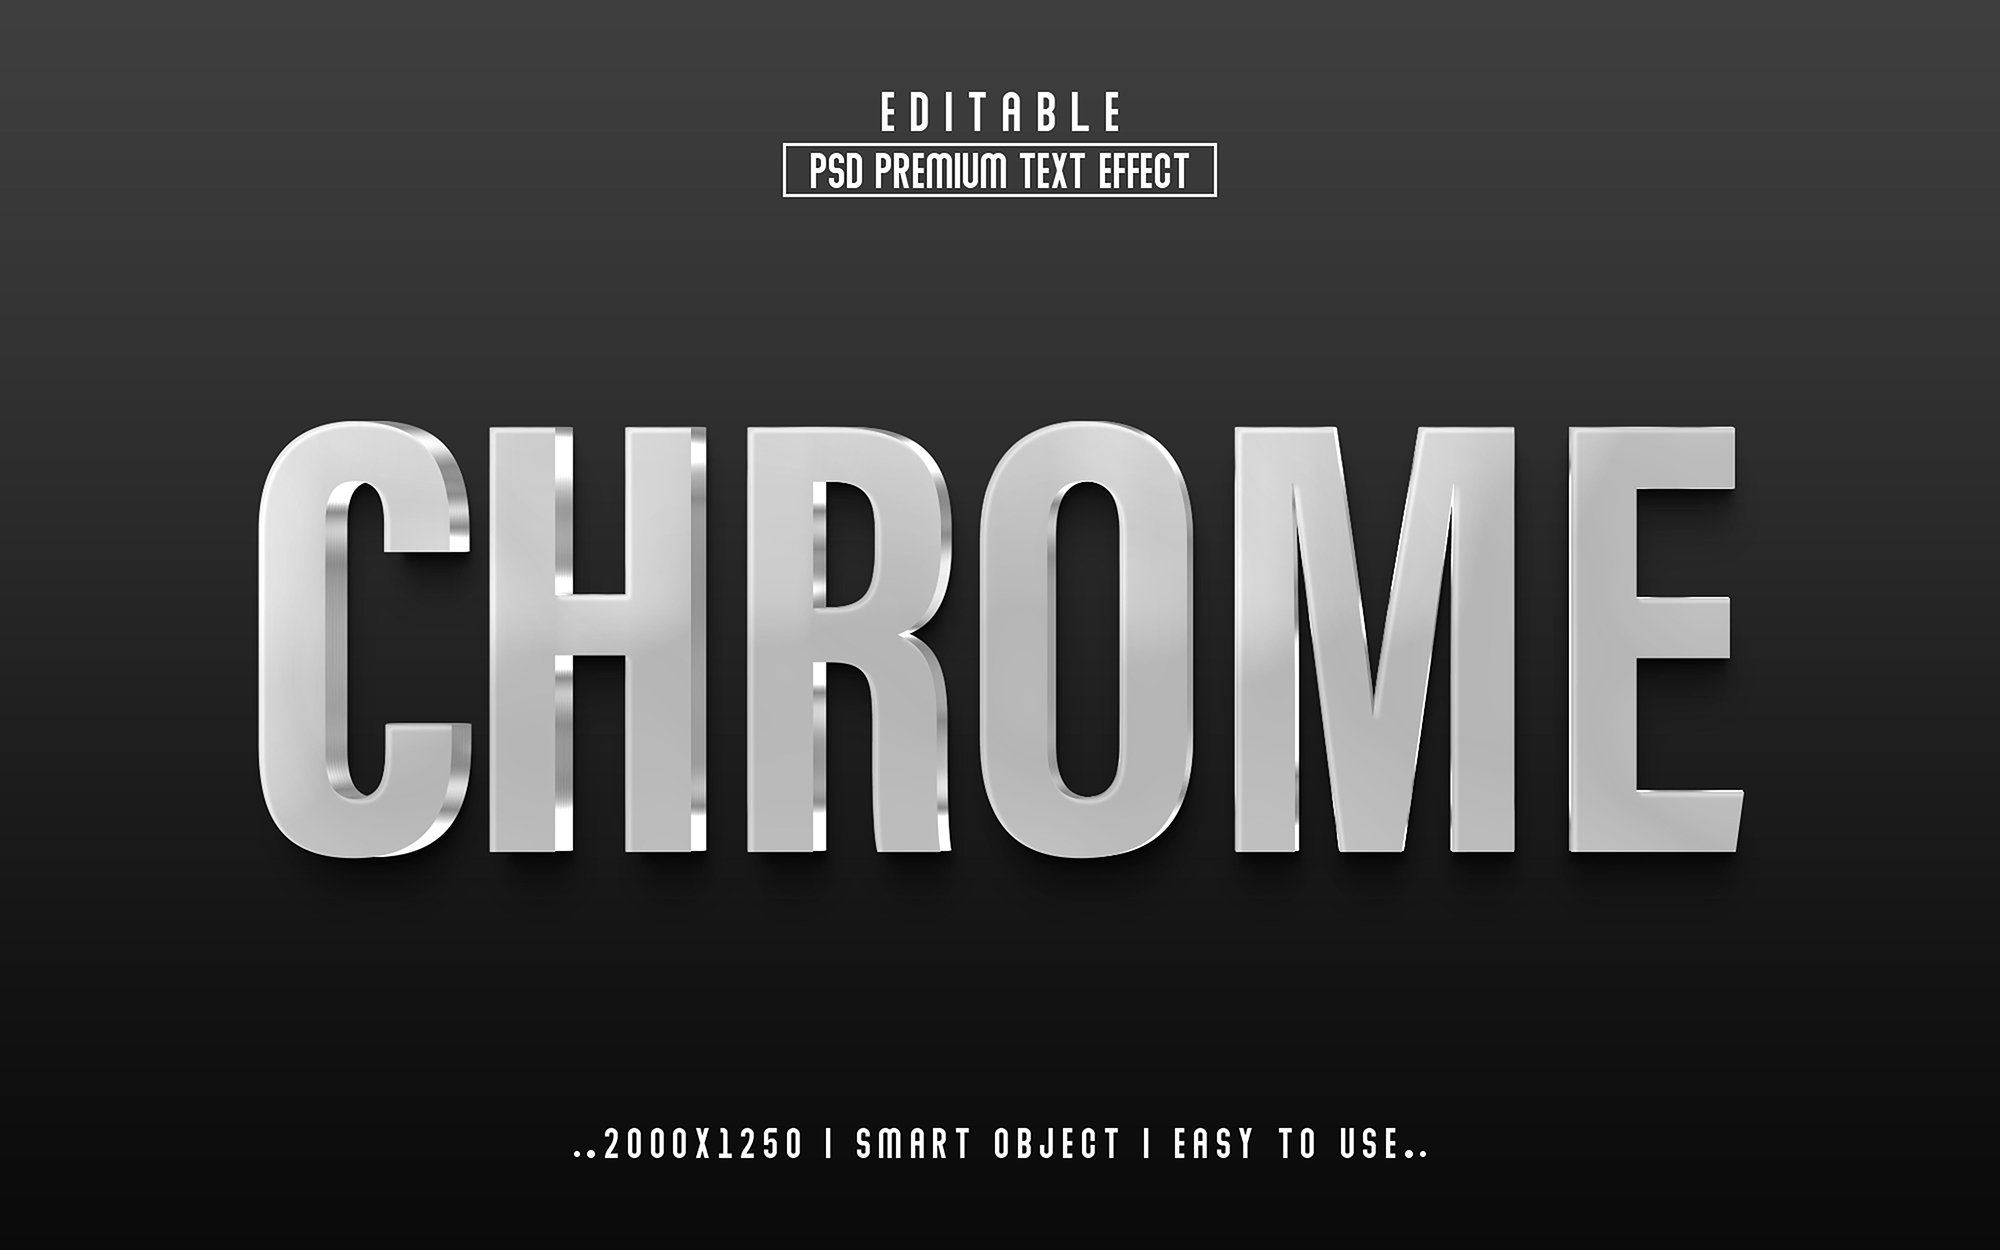 Chrome 3D Editable psd Text Effectcover image.